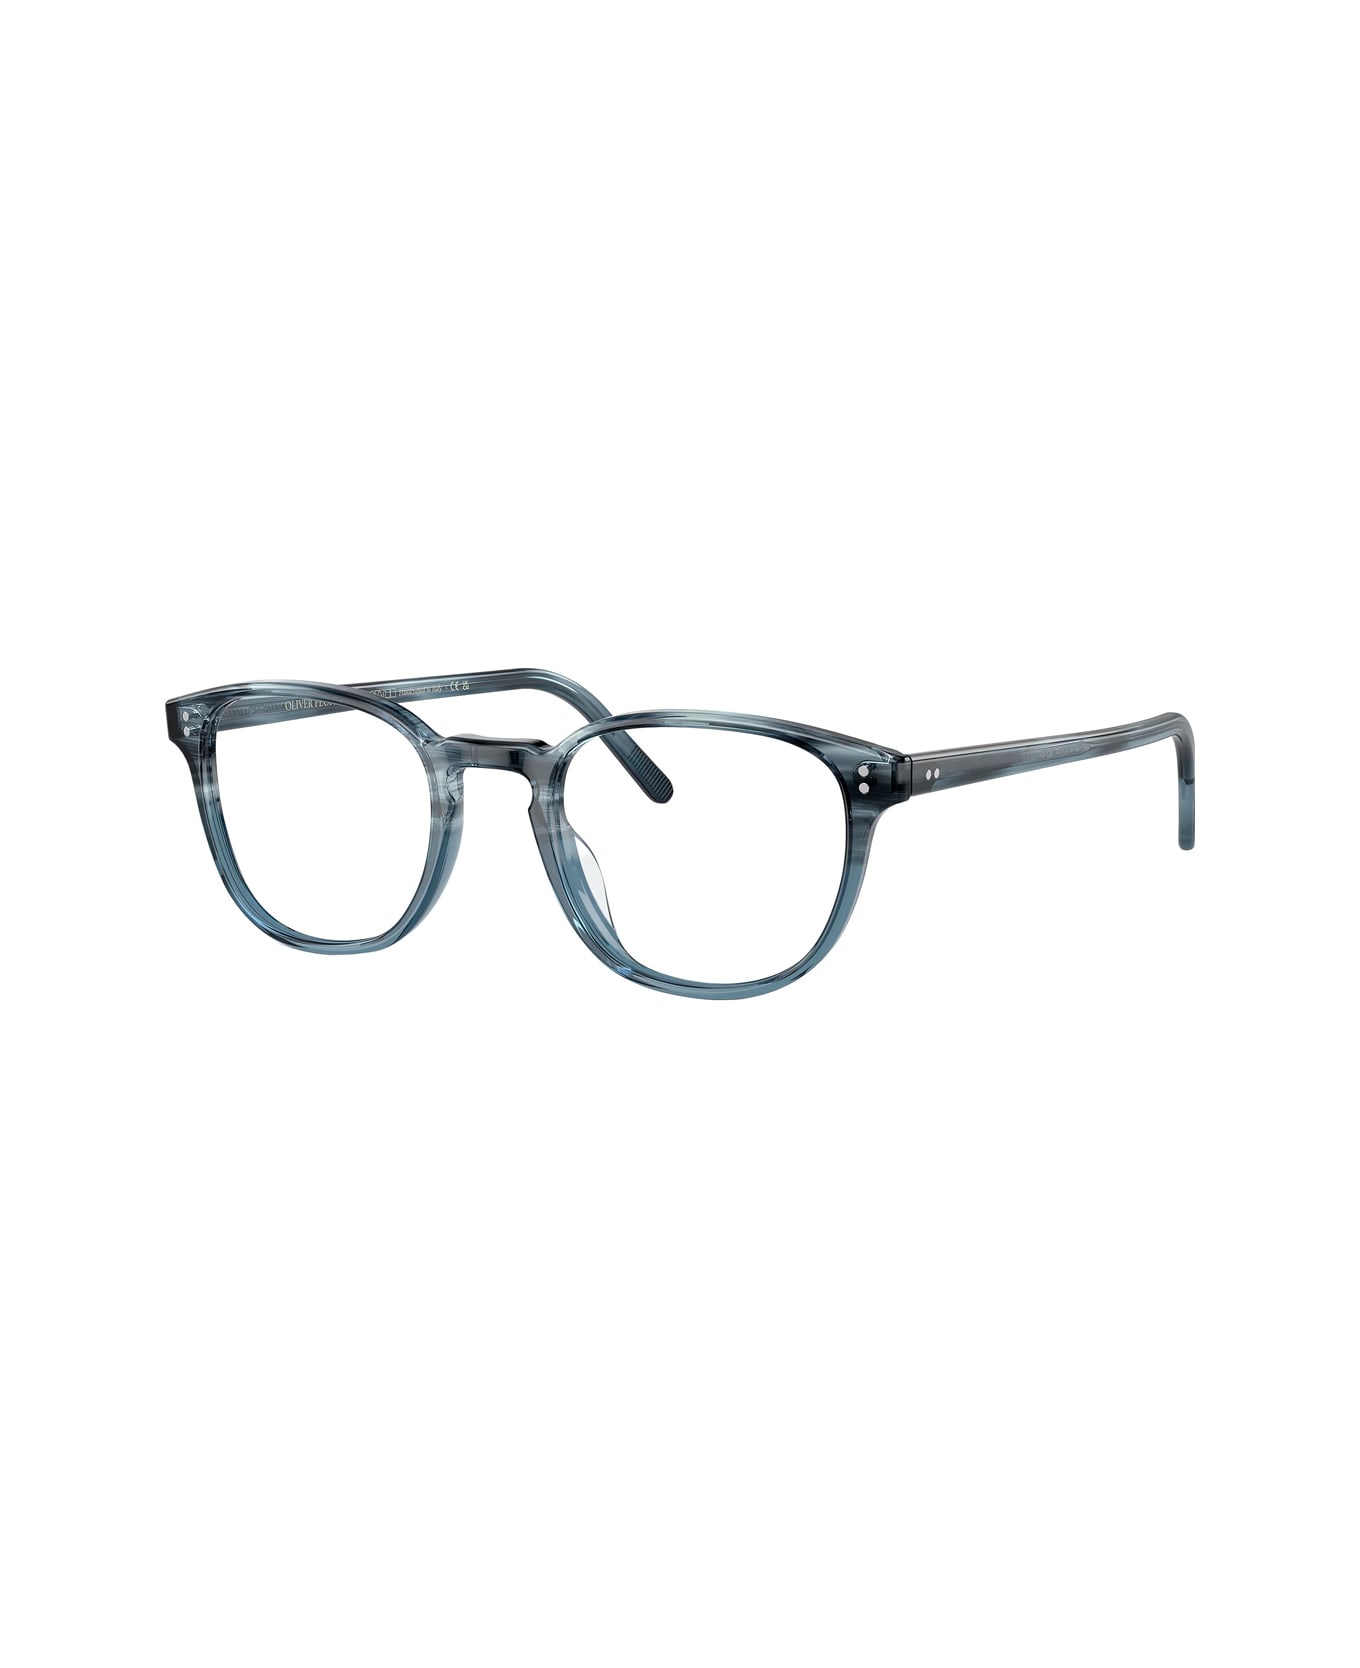 Oliver Peoples Ov5219 - Fairmont 1730 Glasses - Blu アイウェア